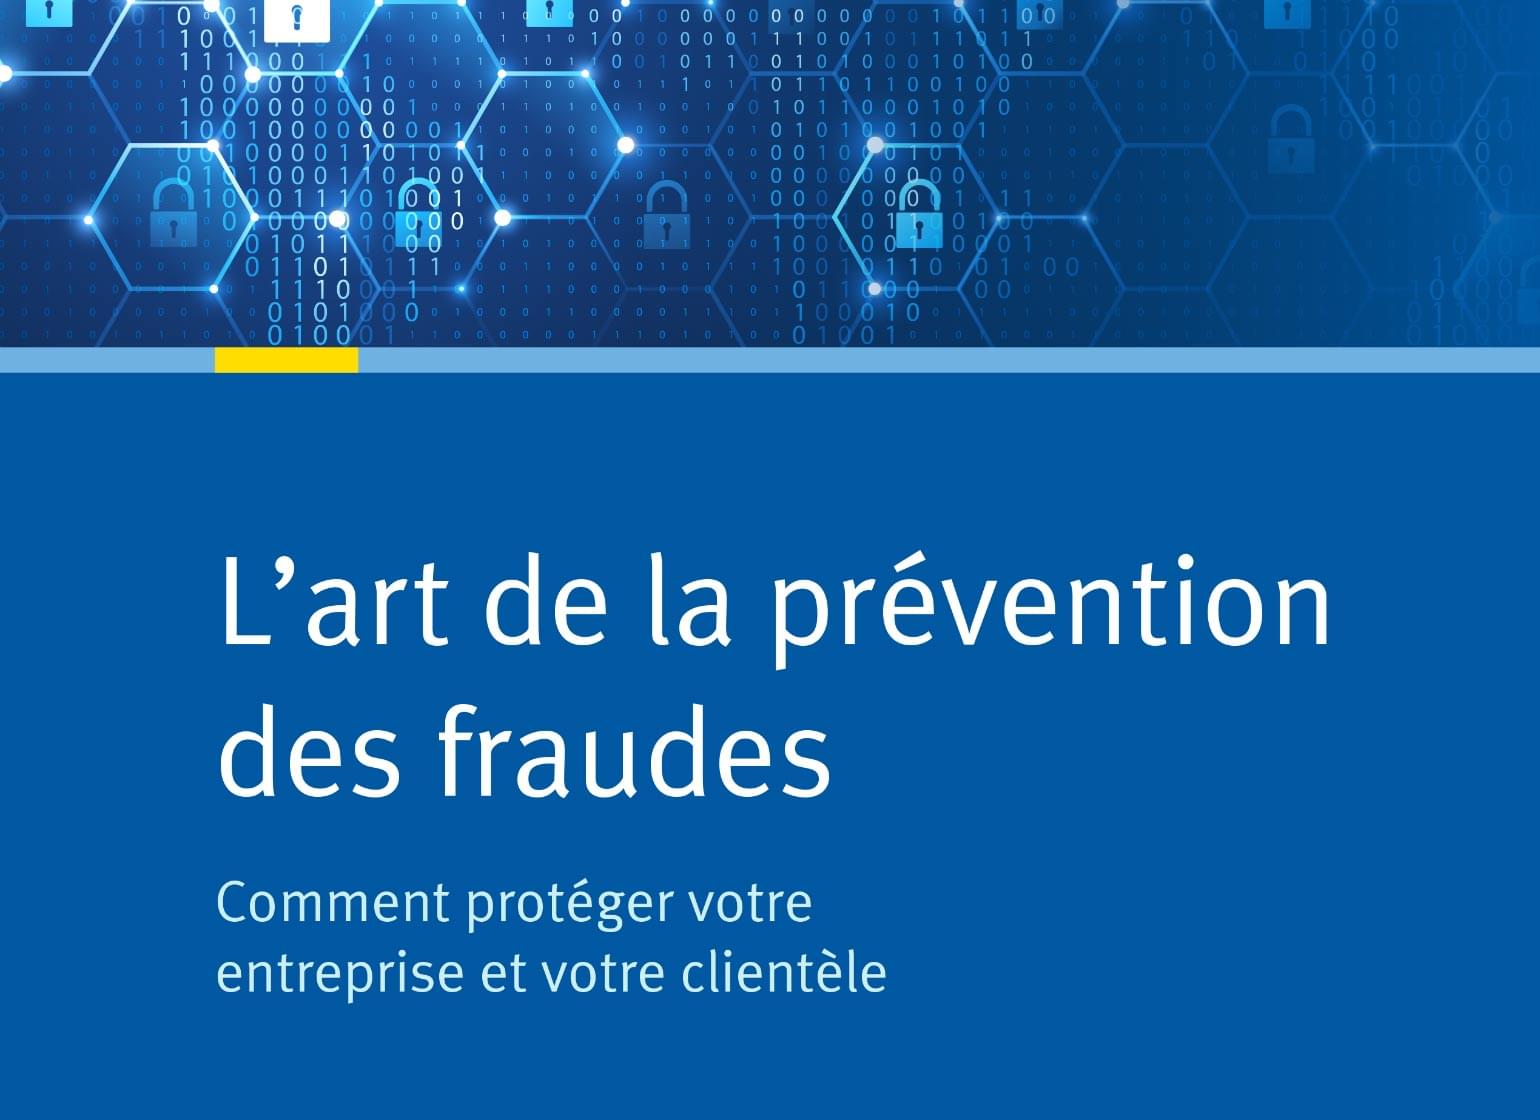 L'art de la prévention des fraudes : Comment protéger votre entreprise et votre clientèle